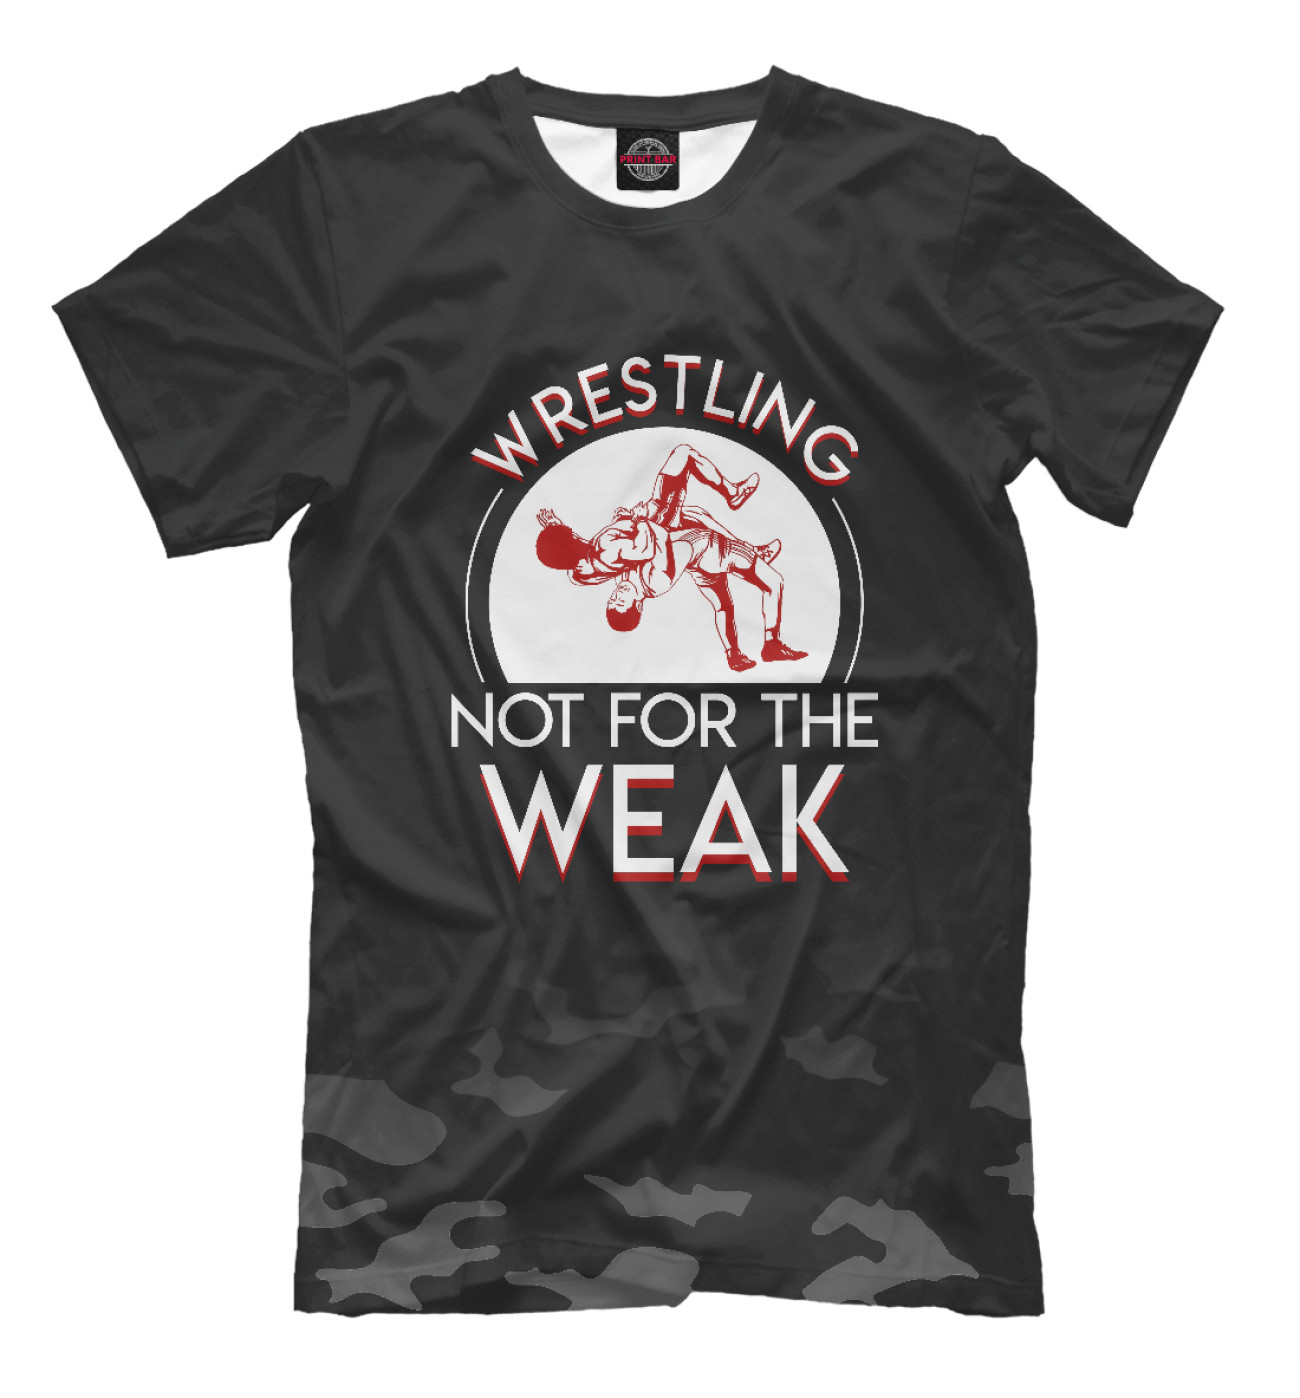 Мужская Футболка Wrestling Not For Weak, артикул: WWE-804234-fut-2